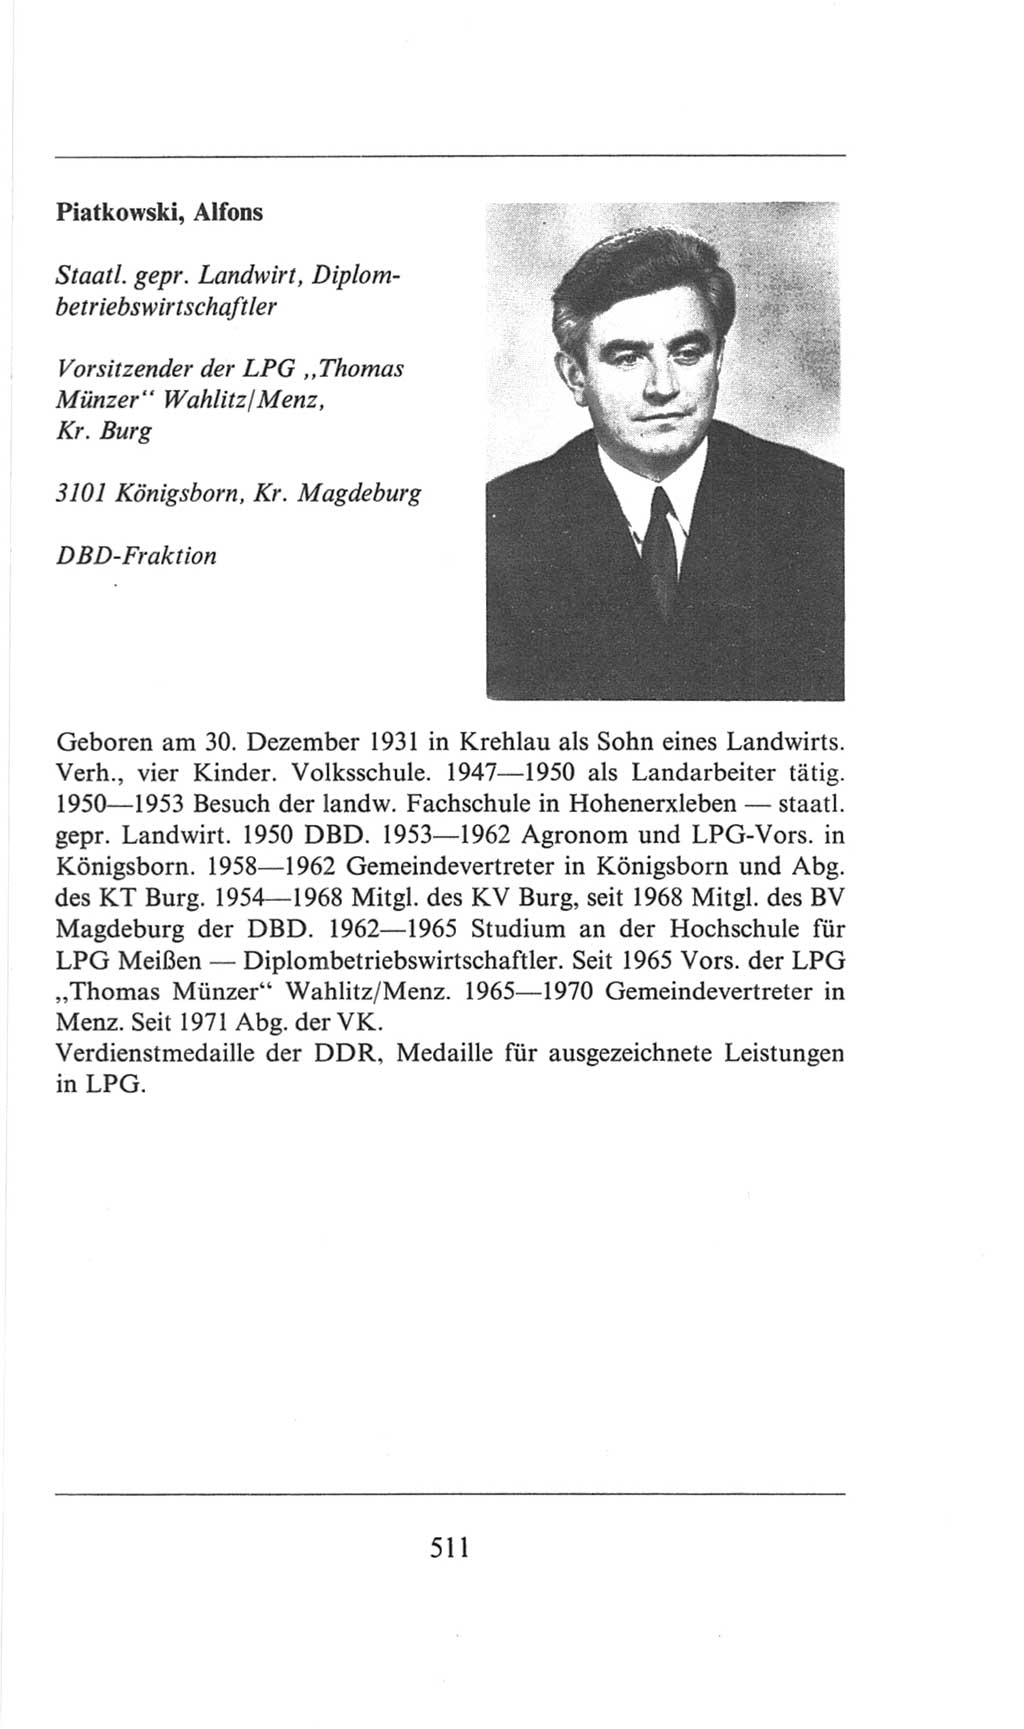 Volkskammer (VK) der Deutschen Demokratischen Republik (DDR), 6. Wahlperiode 1971-1976, Seite 511 (VK. DDR 6. WP. 1971-1976, S. 511)